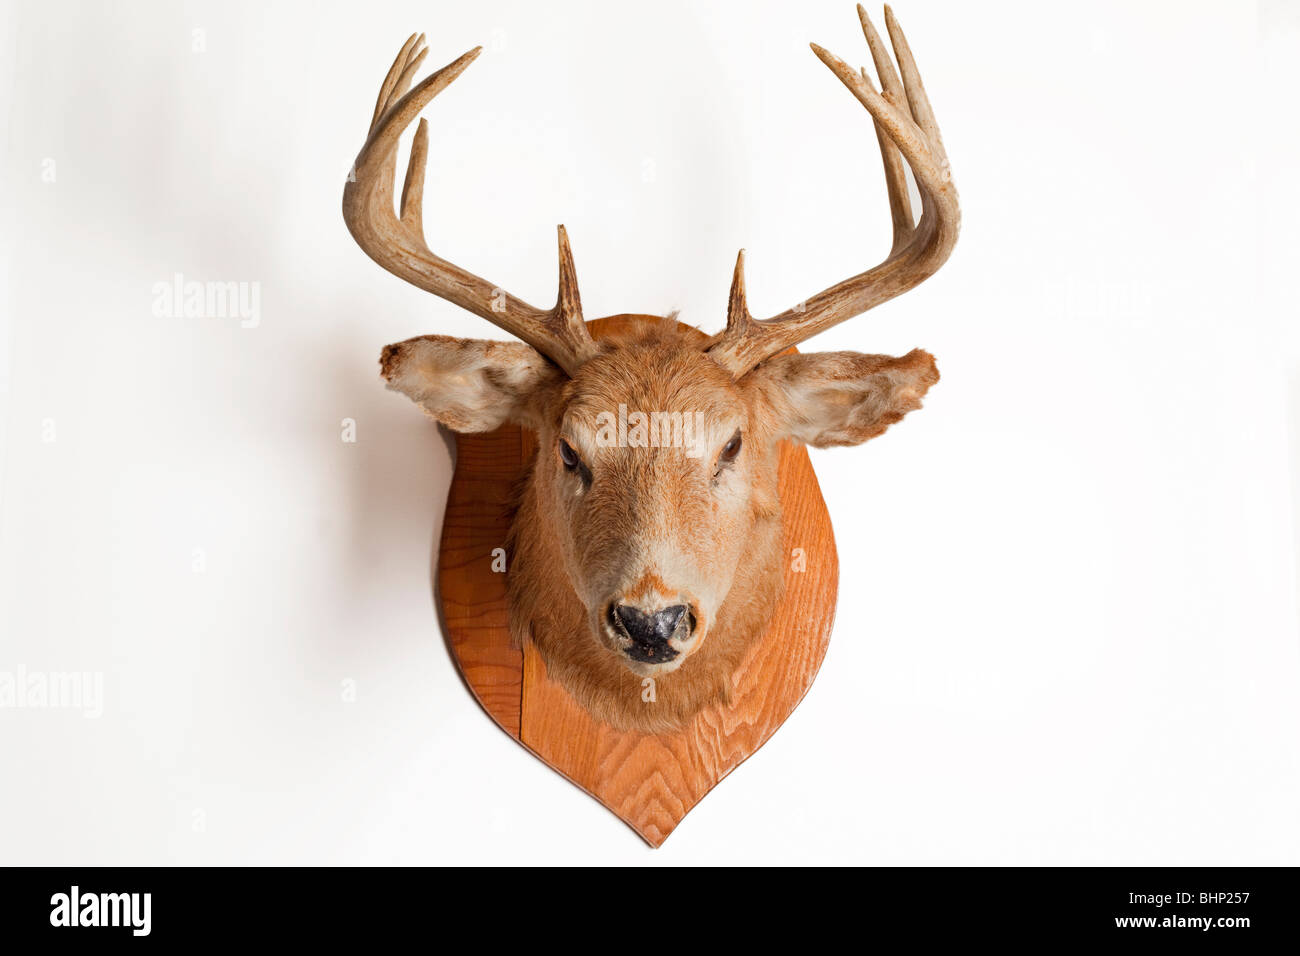 deer head Stock Photo